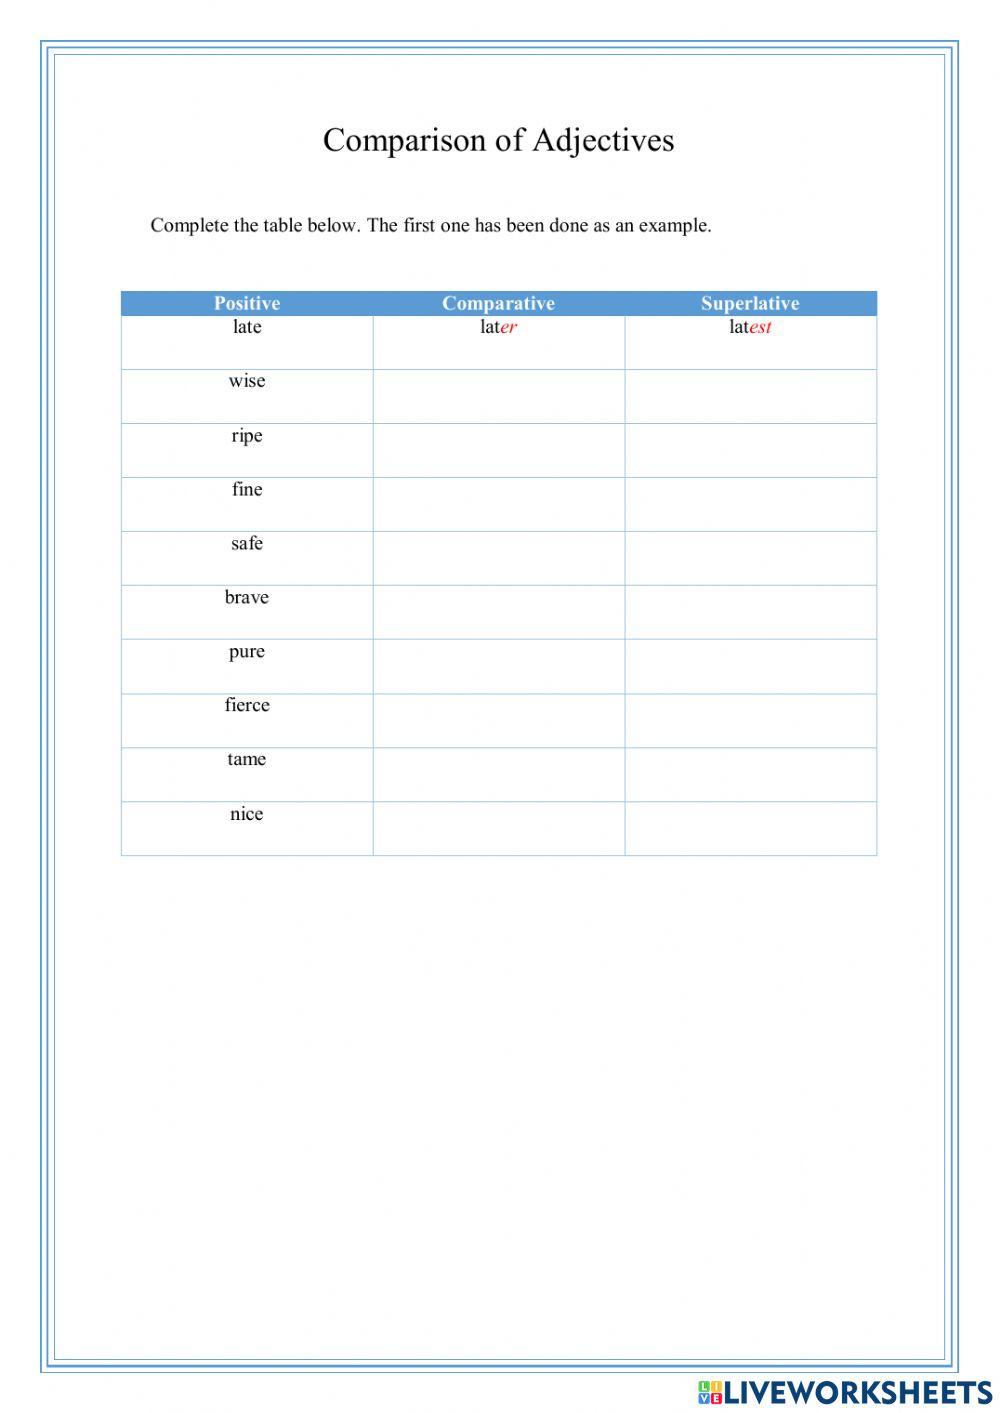 Comparison of Adjectives Live Worksheet02